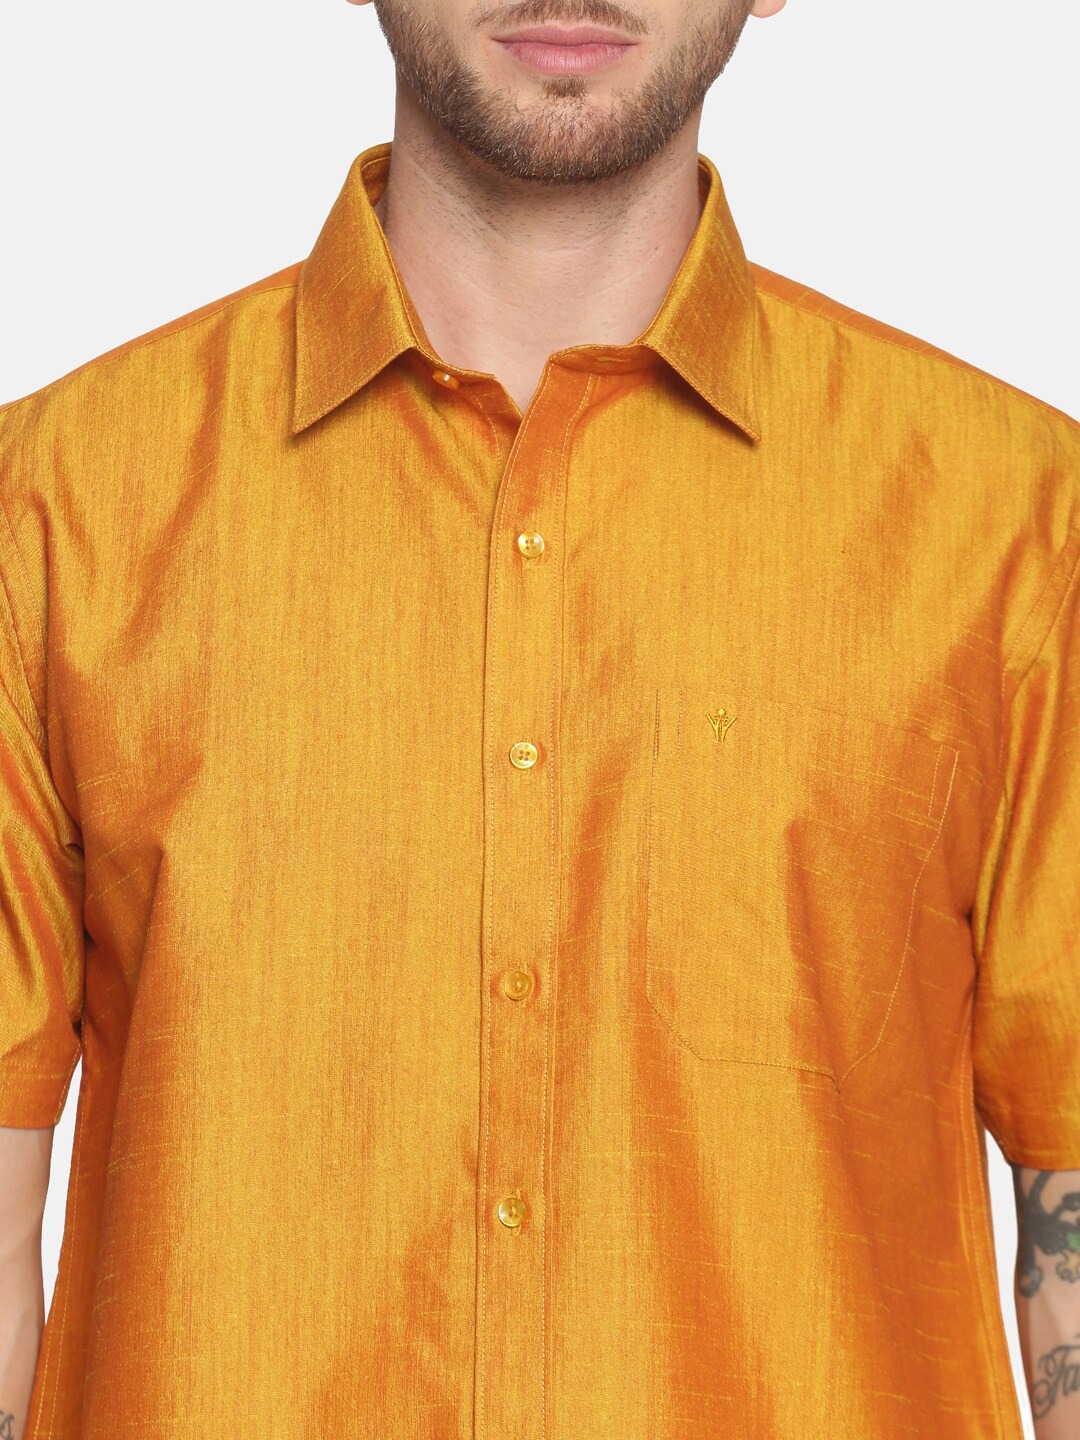 Ramraj Cotton | RAMRAJ COTTON Men Gold-Toned  White Solid Shirt  Dhoti Set 4